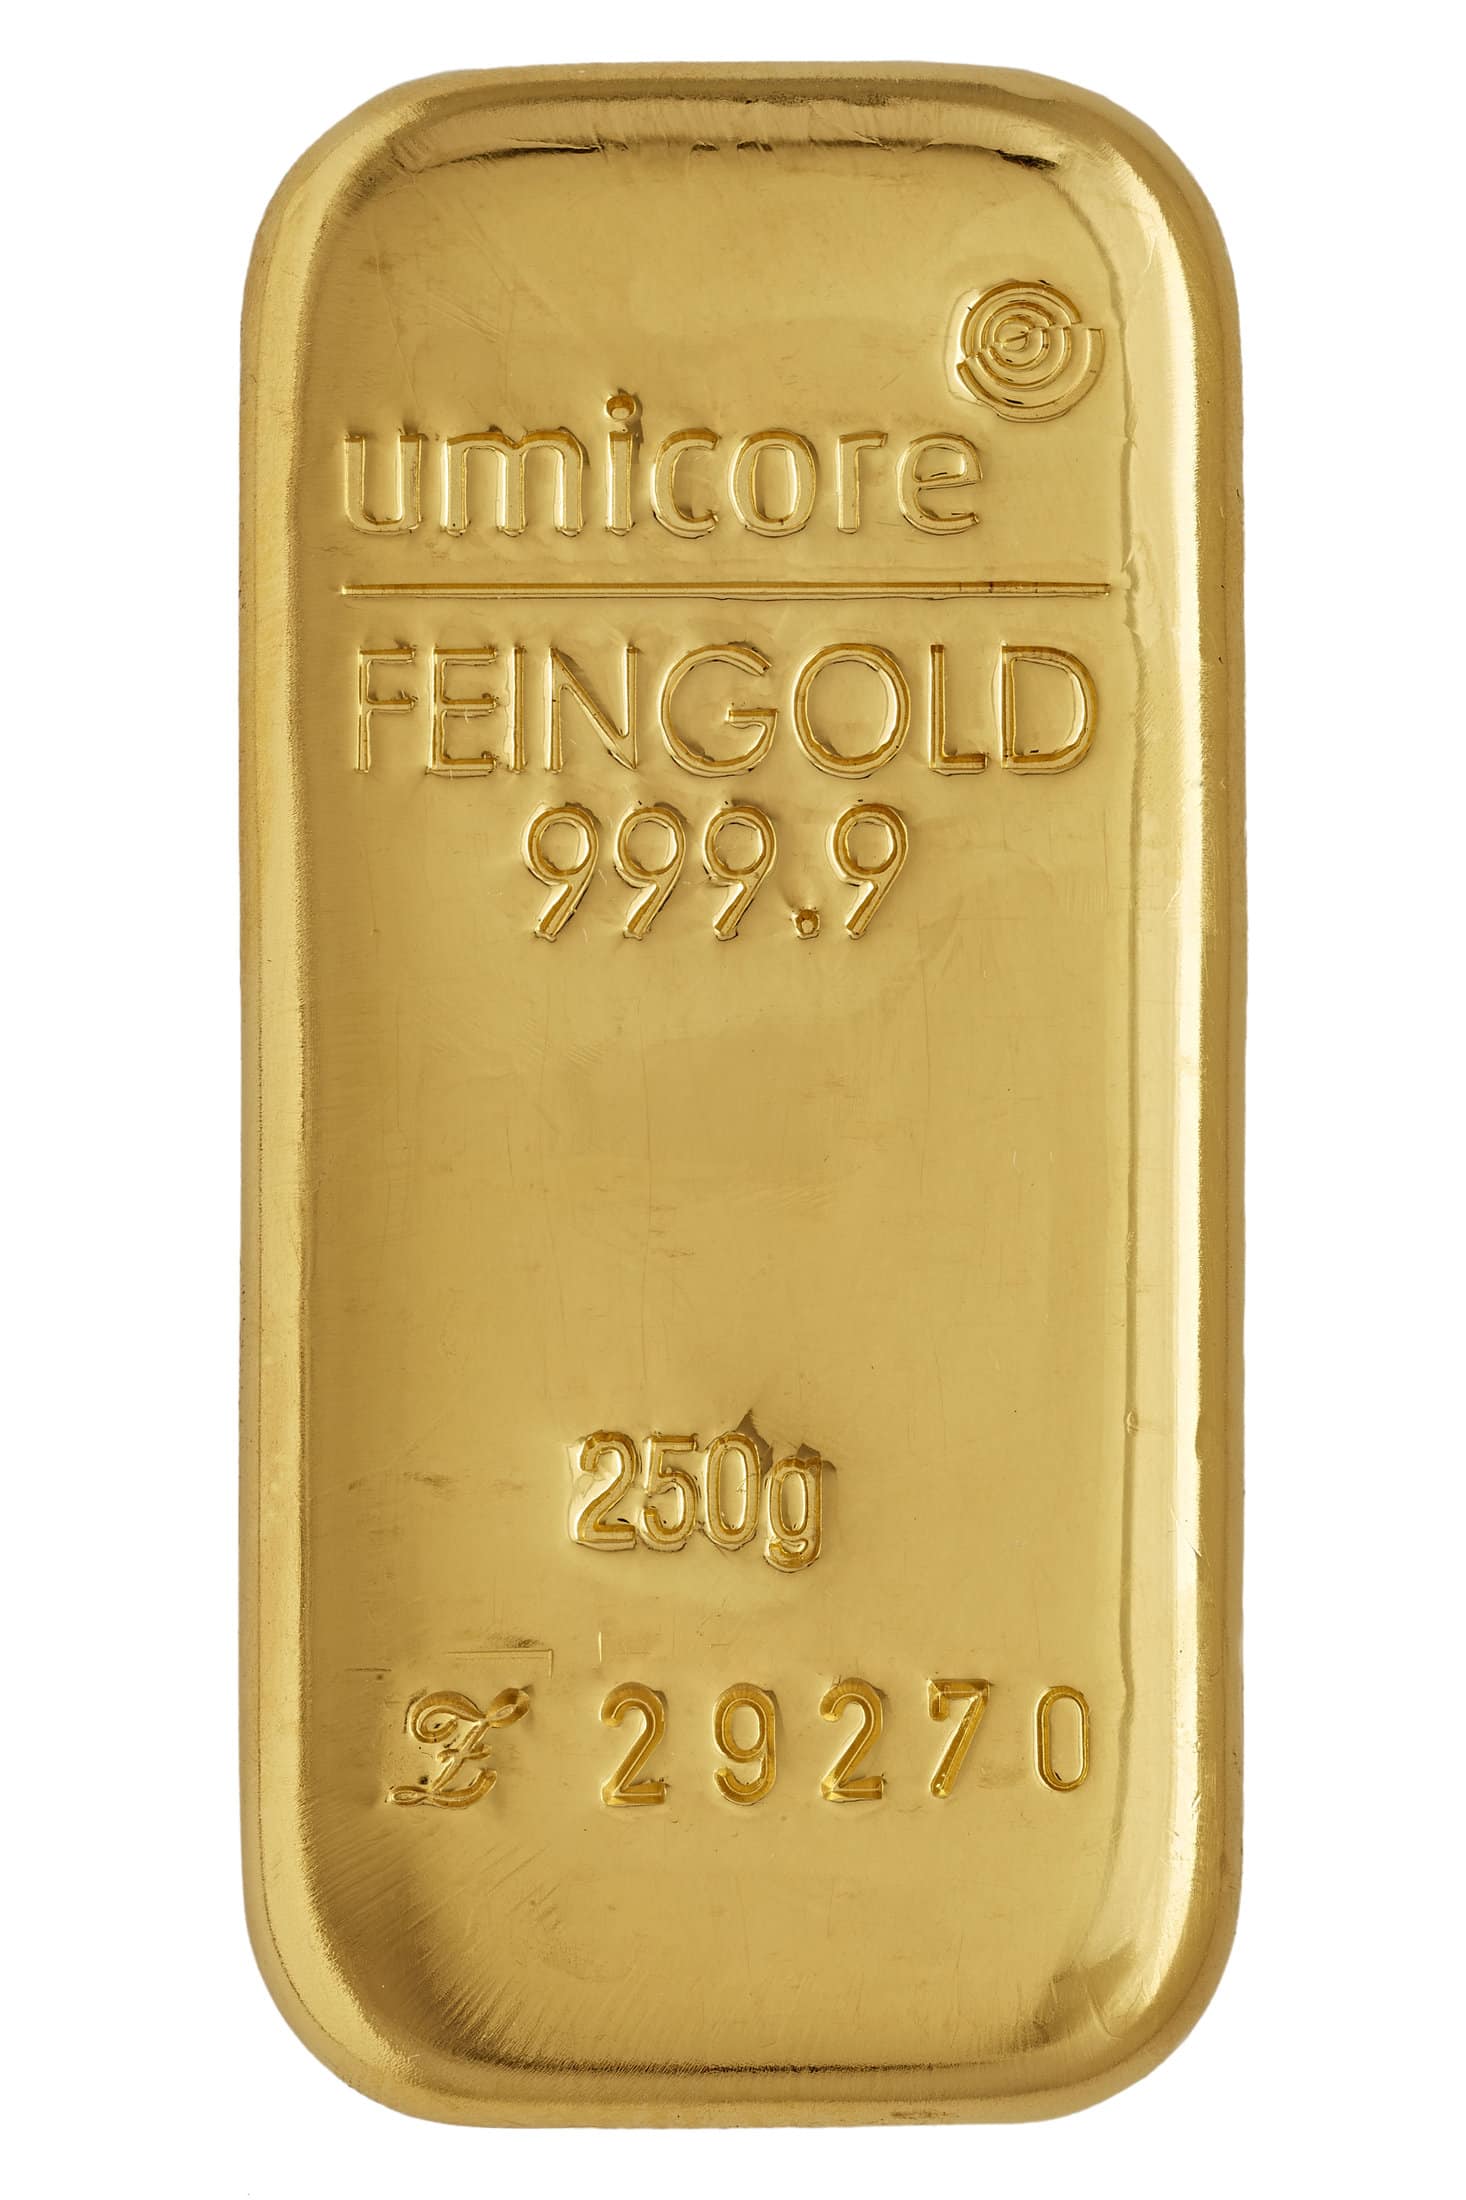 Ontwerp van Umicore goudbaar 250 gram